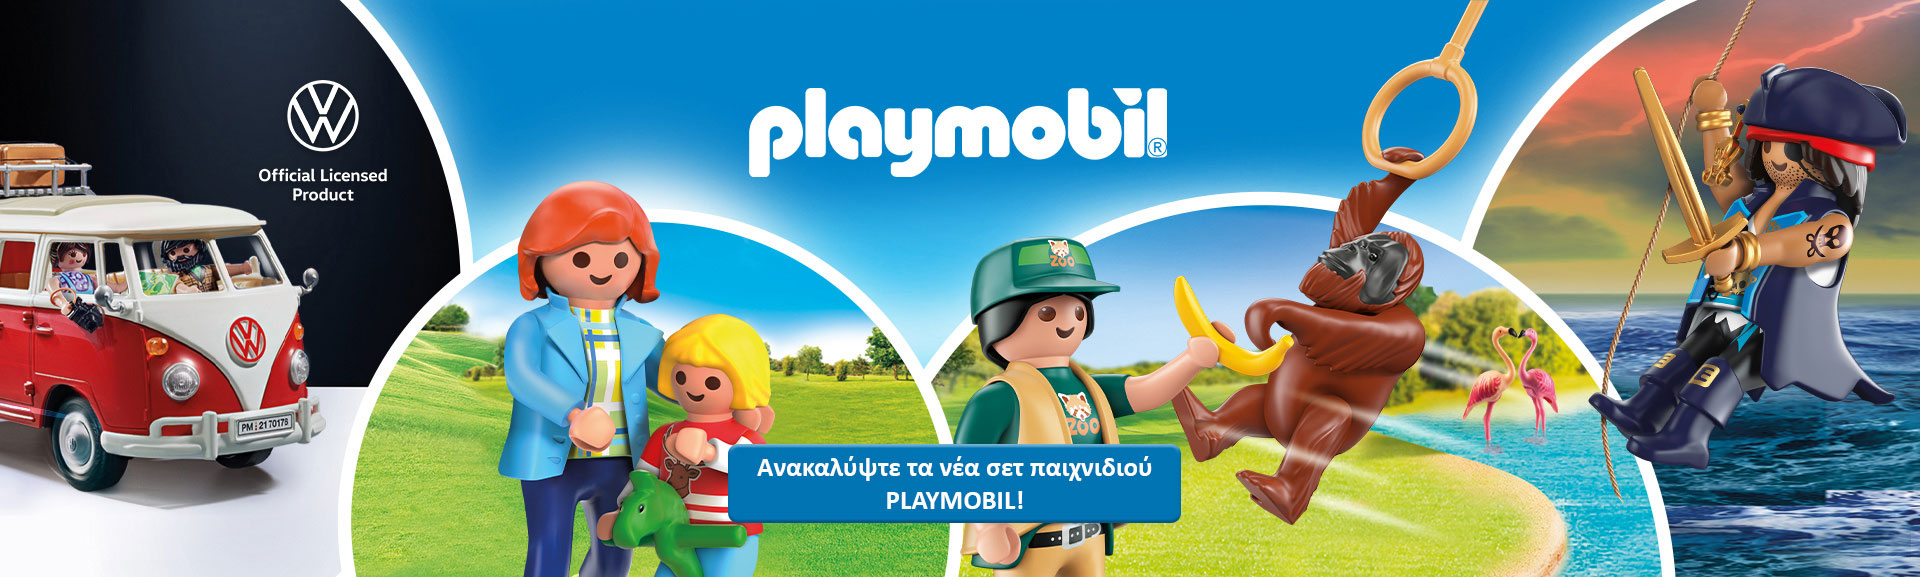 Playmobil 1920x577 1